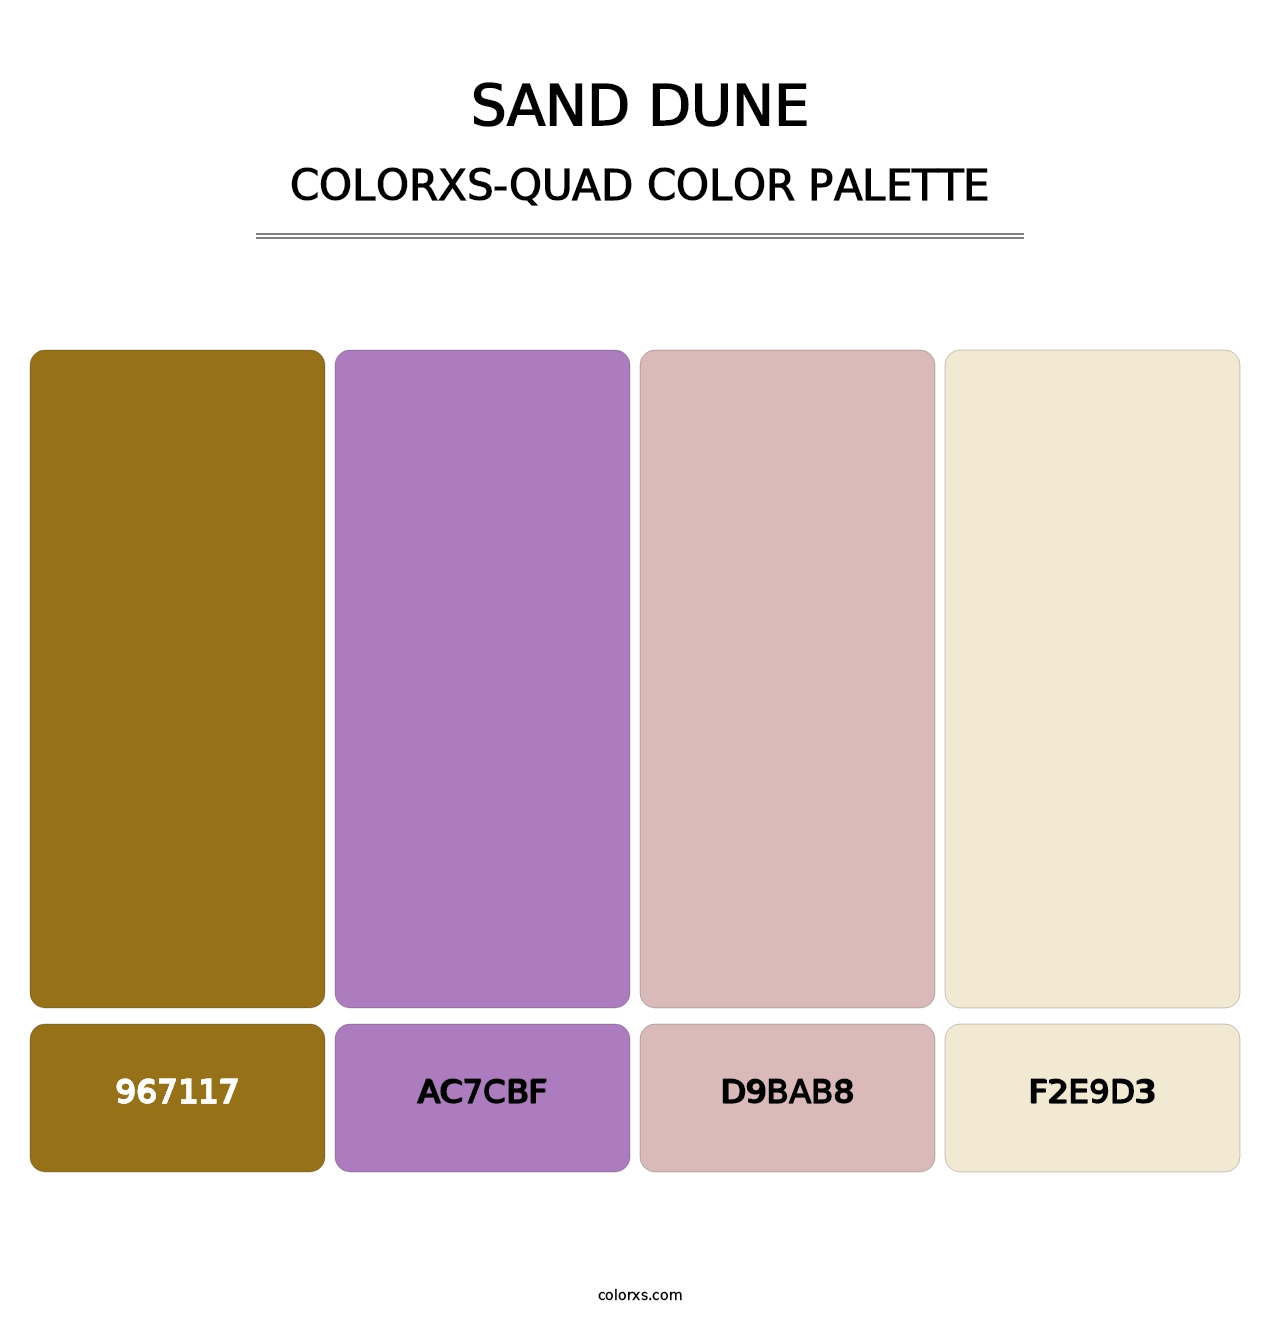 Sand Dune - Colorxs Quad Palette